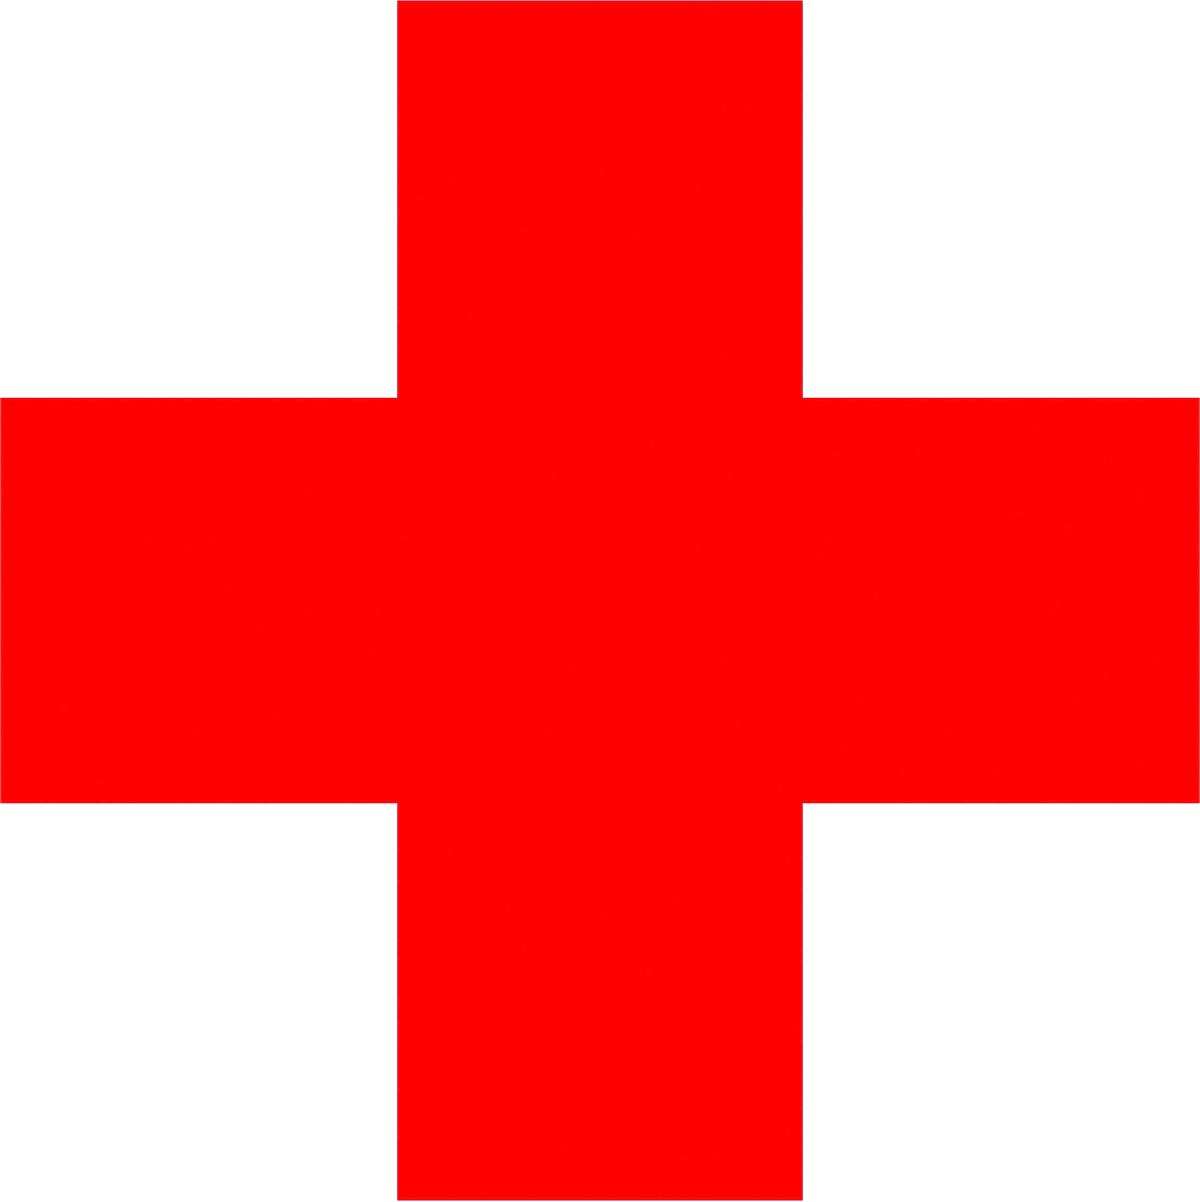 American Red Cross Logo - Image result for red cross logo. Calvin's Medikit. Red cross